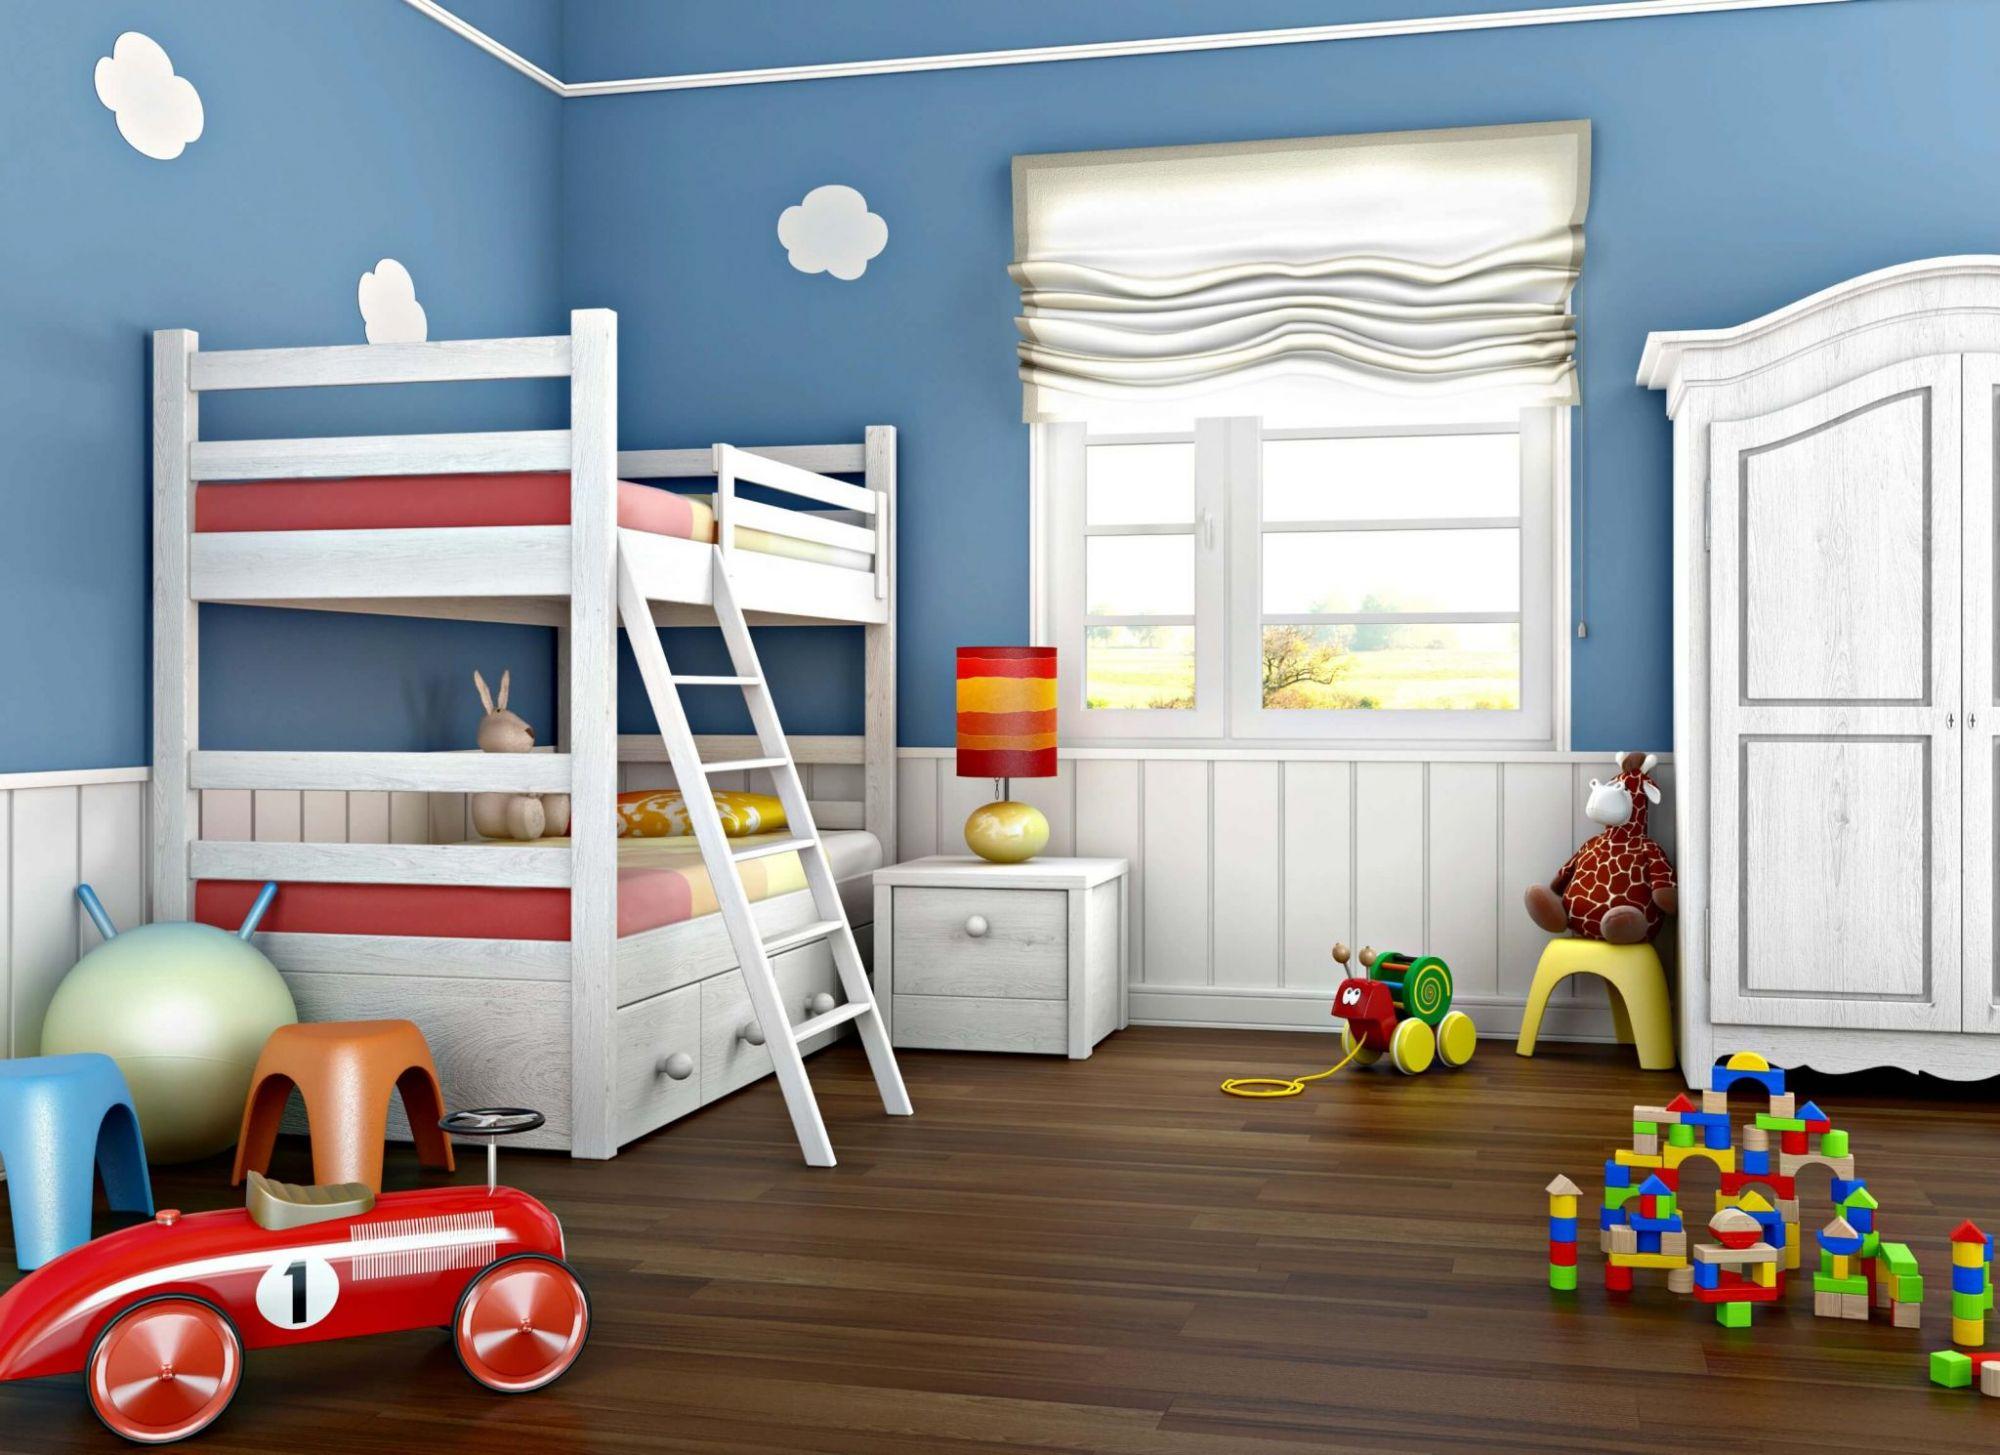 بچه ها عاشق این مدل اتاق خوابن! | 10 ایده مدرن برای دکوراسیون اتاق کودک + عکس